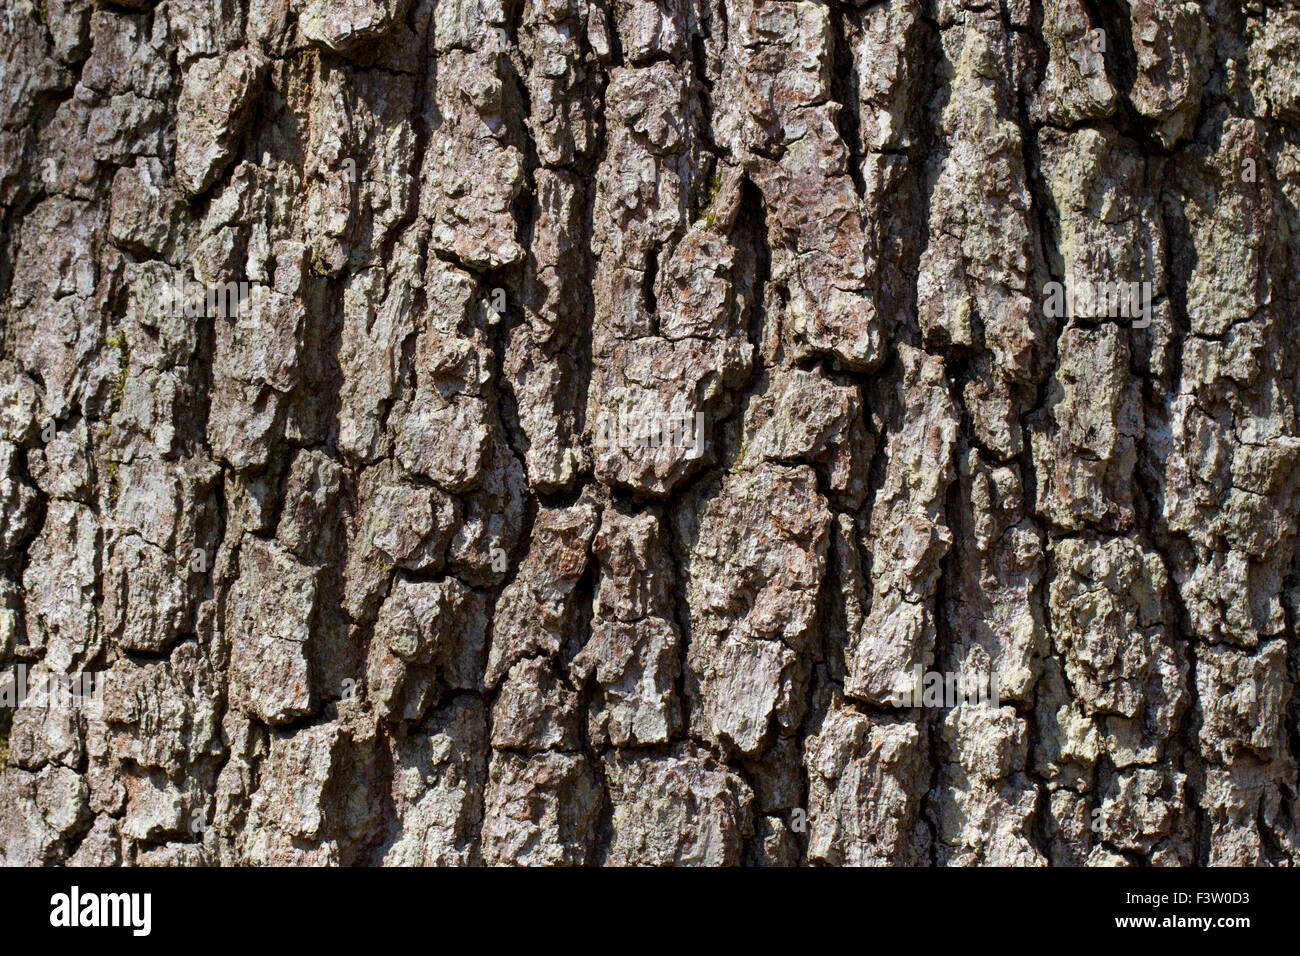 Chêne sessile (Quercus petraea) écorce d'un arbre adulte. Powys, Pays de Galles. Avril. Banque D'Images